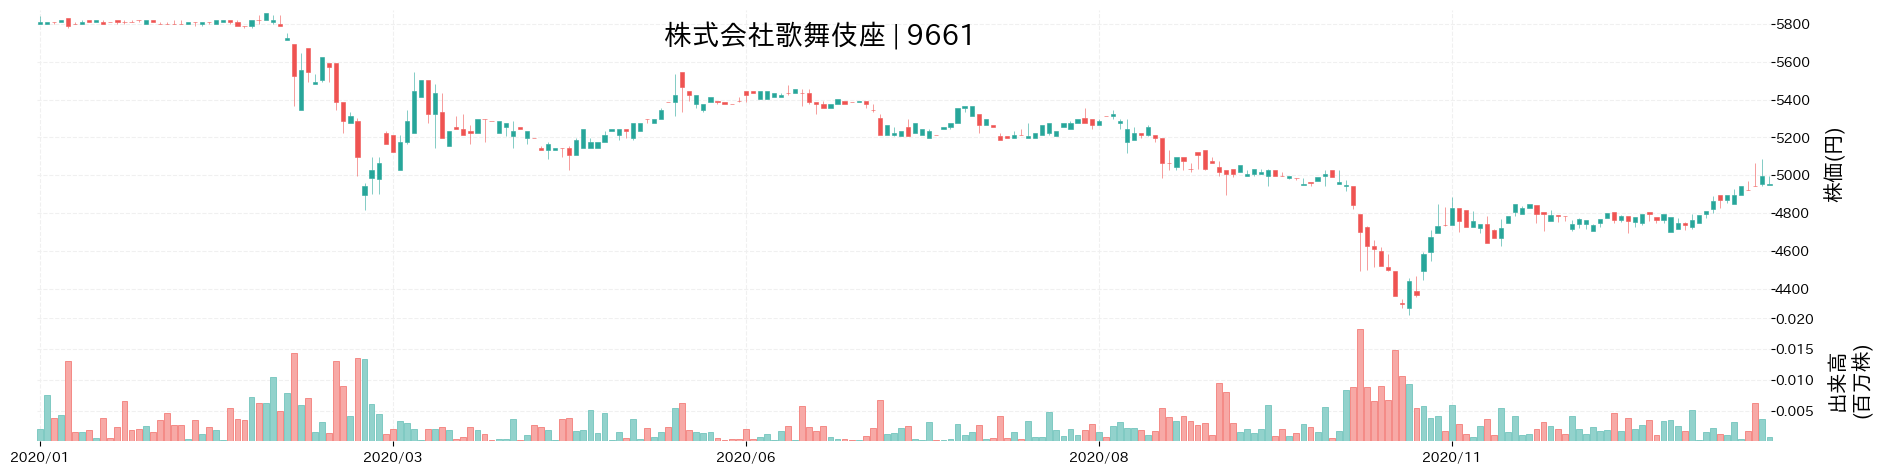 歌舞伎座の株価推移(2020)